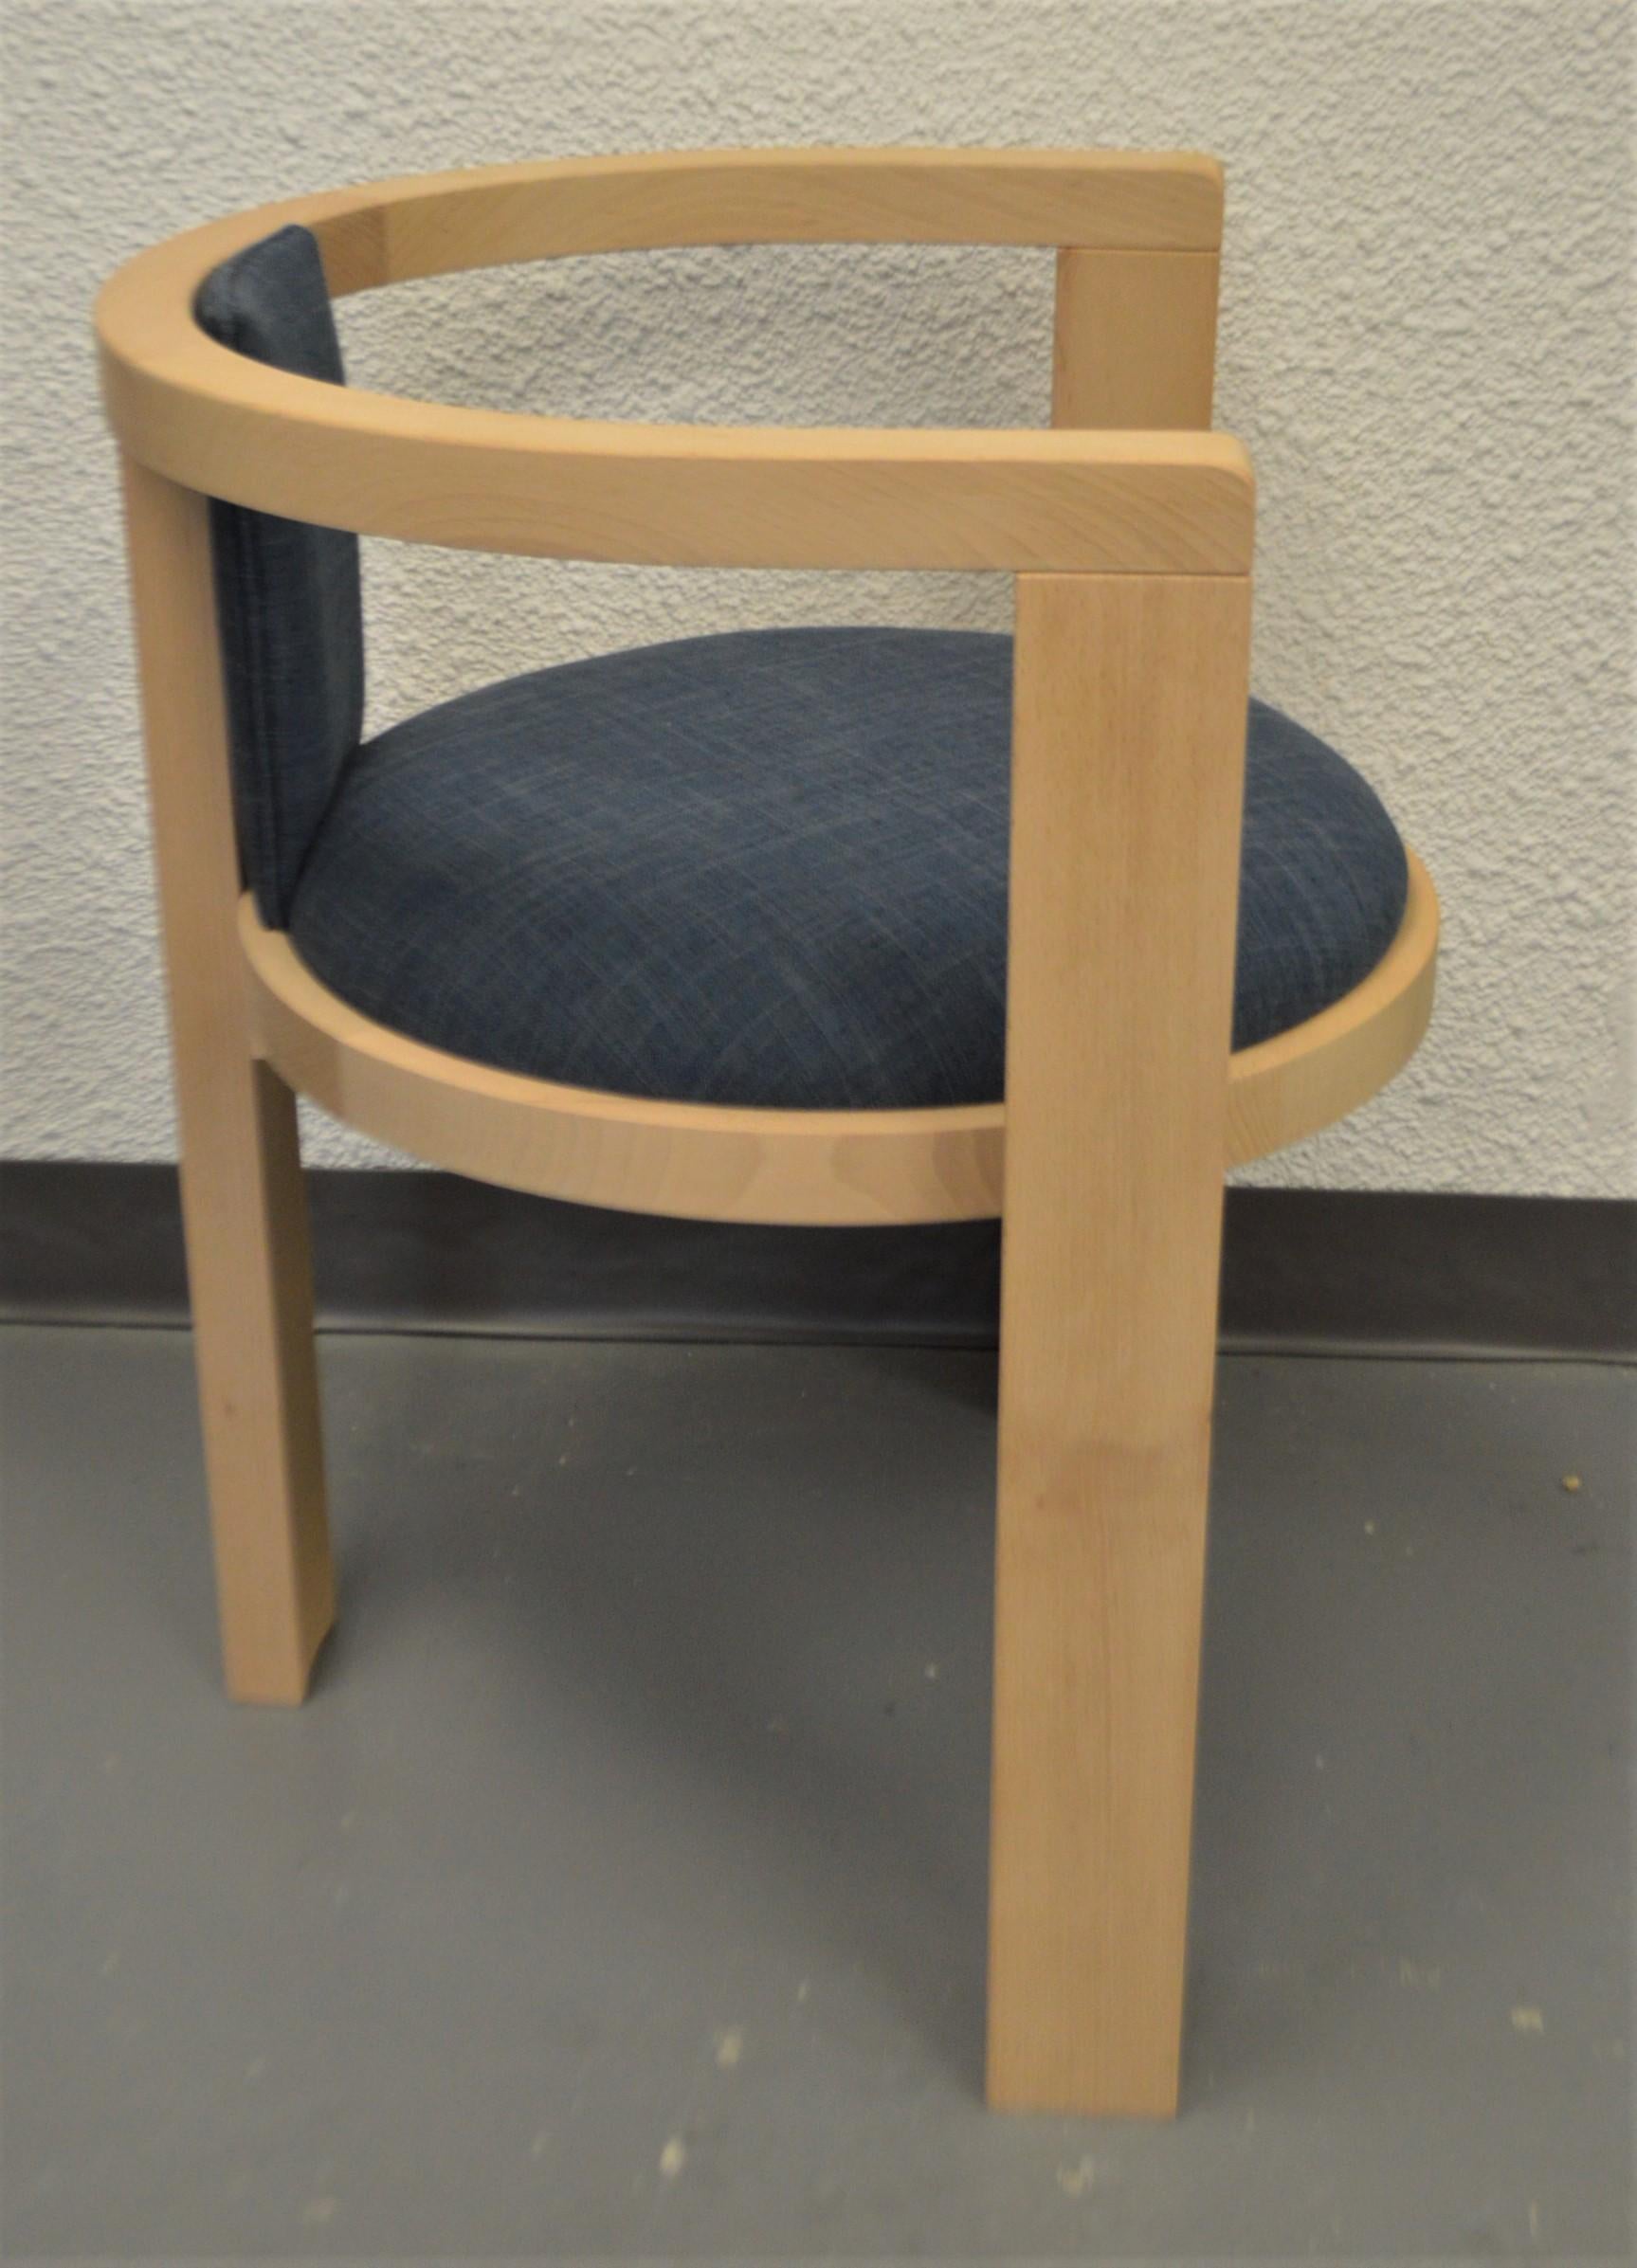 La chaise Helga a une influence scandinave et est fabriquée en Italie en bois de hêtre massif. Nous proposons cette chaise d'aspect moderne avec une teinte de bois claire, comme illustré ici, ou nous pouvons appliquer la teinte de bois ou la